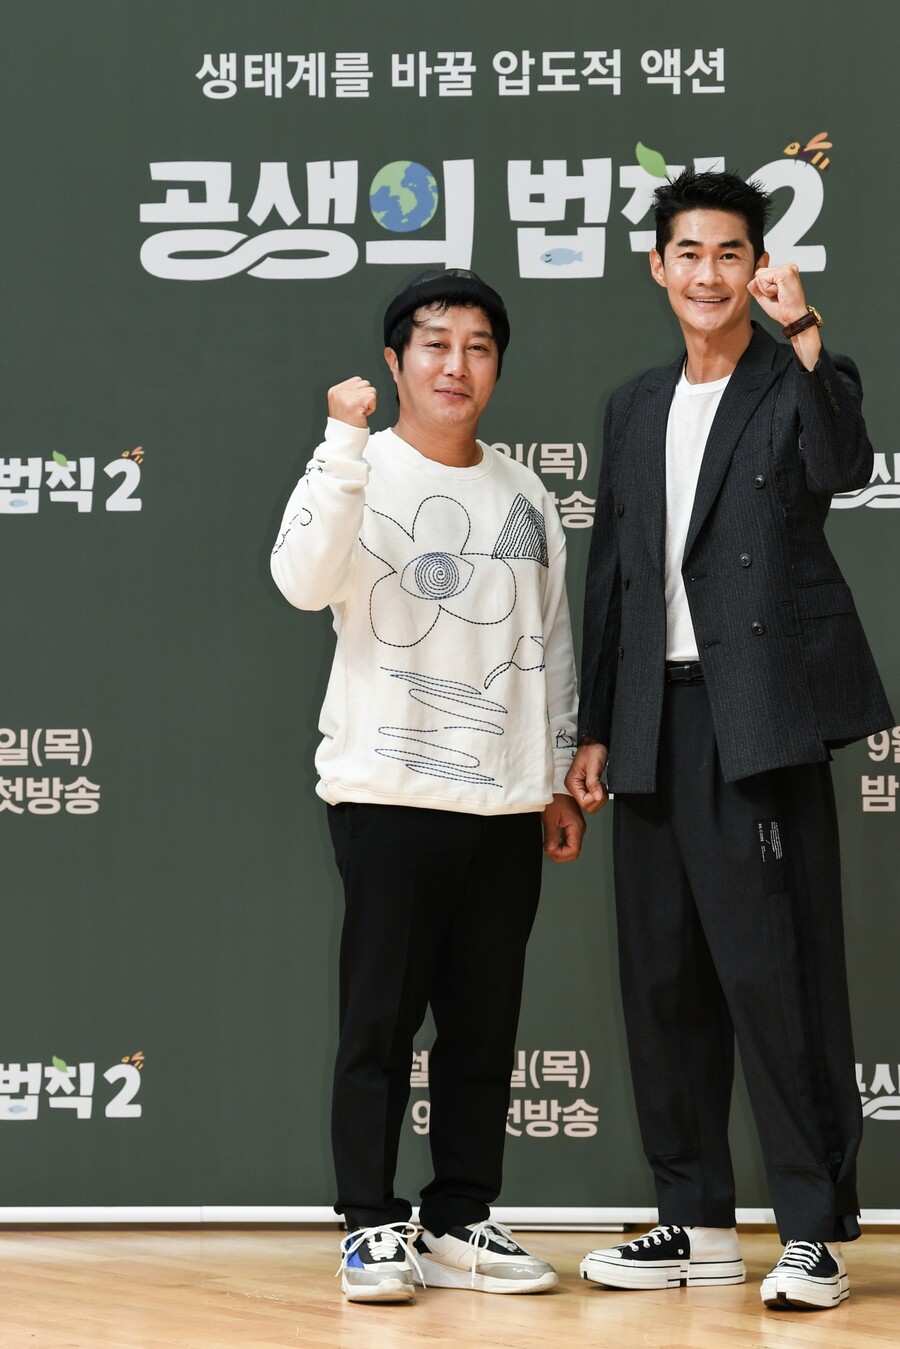 ▲ 김병만(왼쪽), 배정남. 제공| SBS